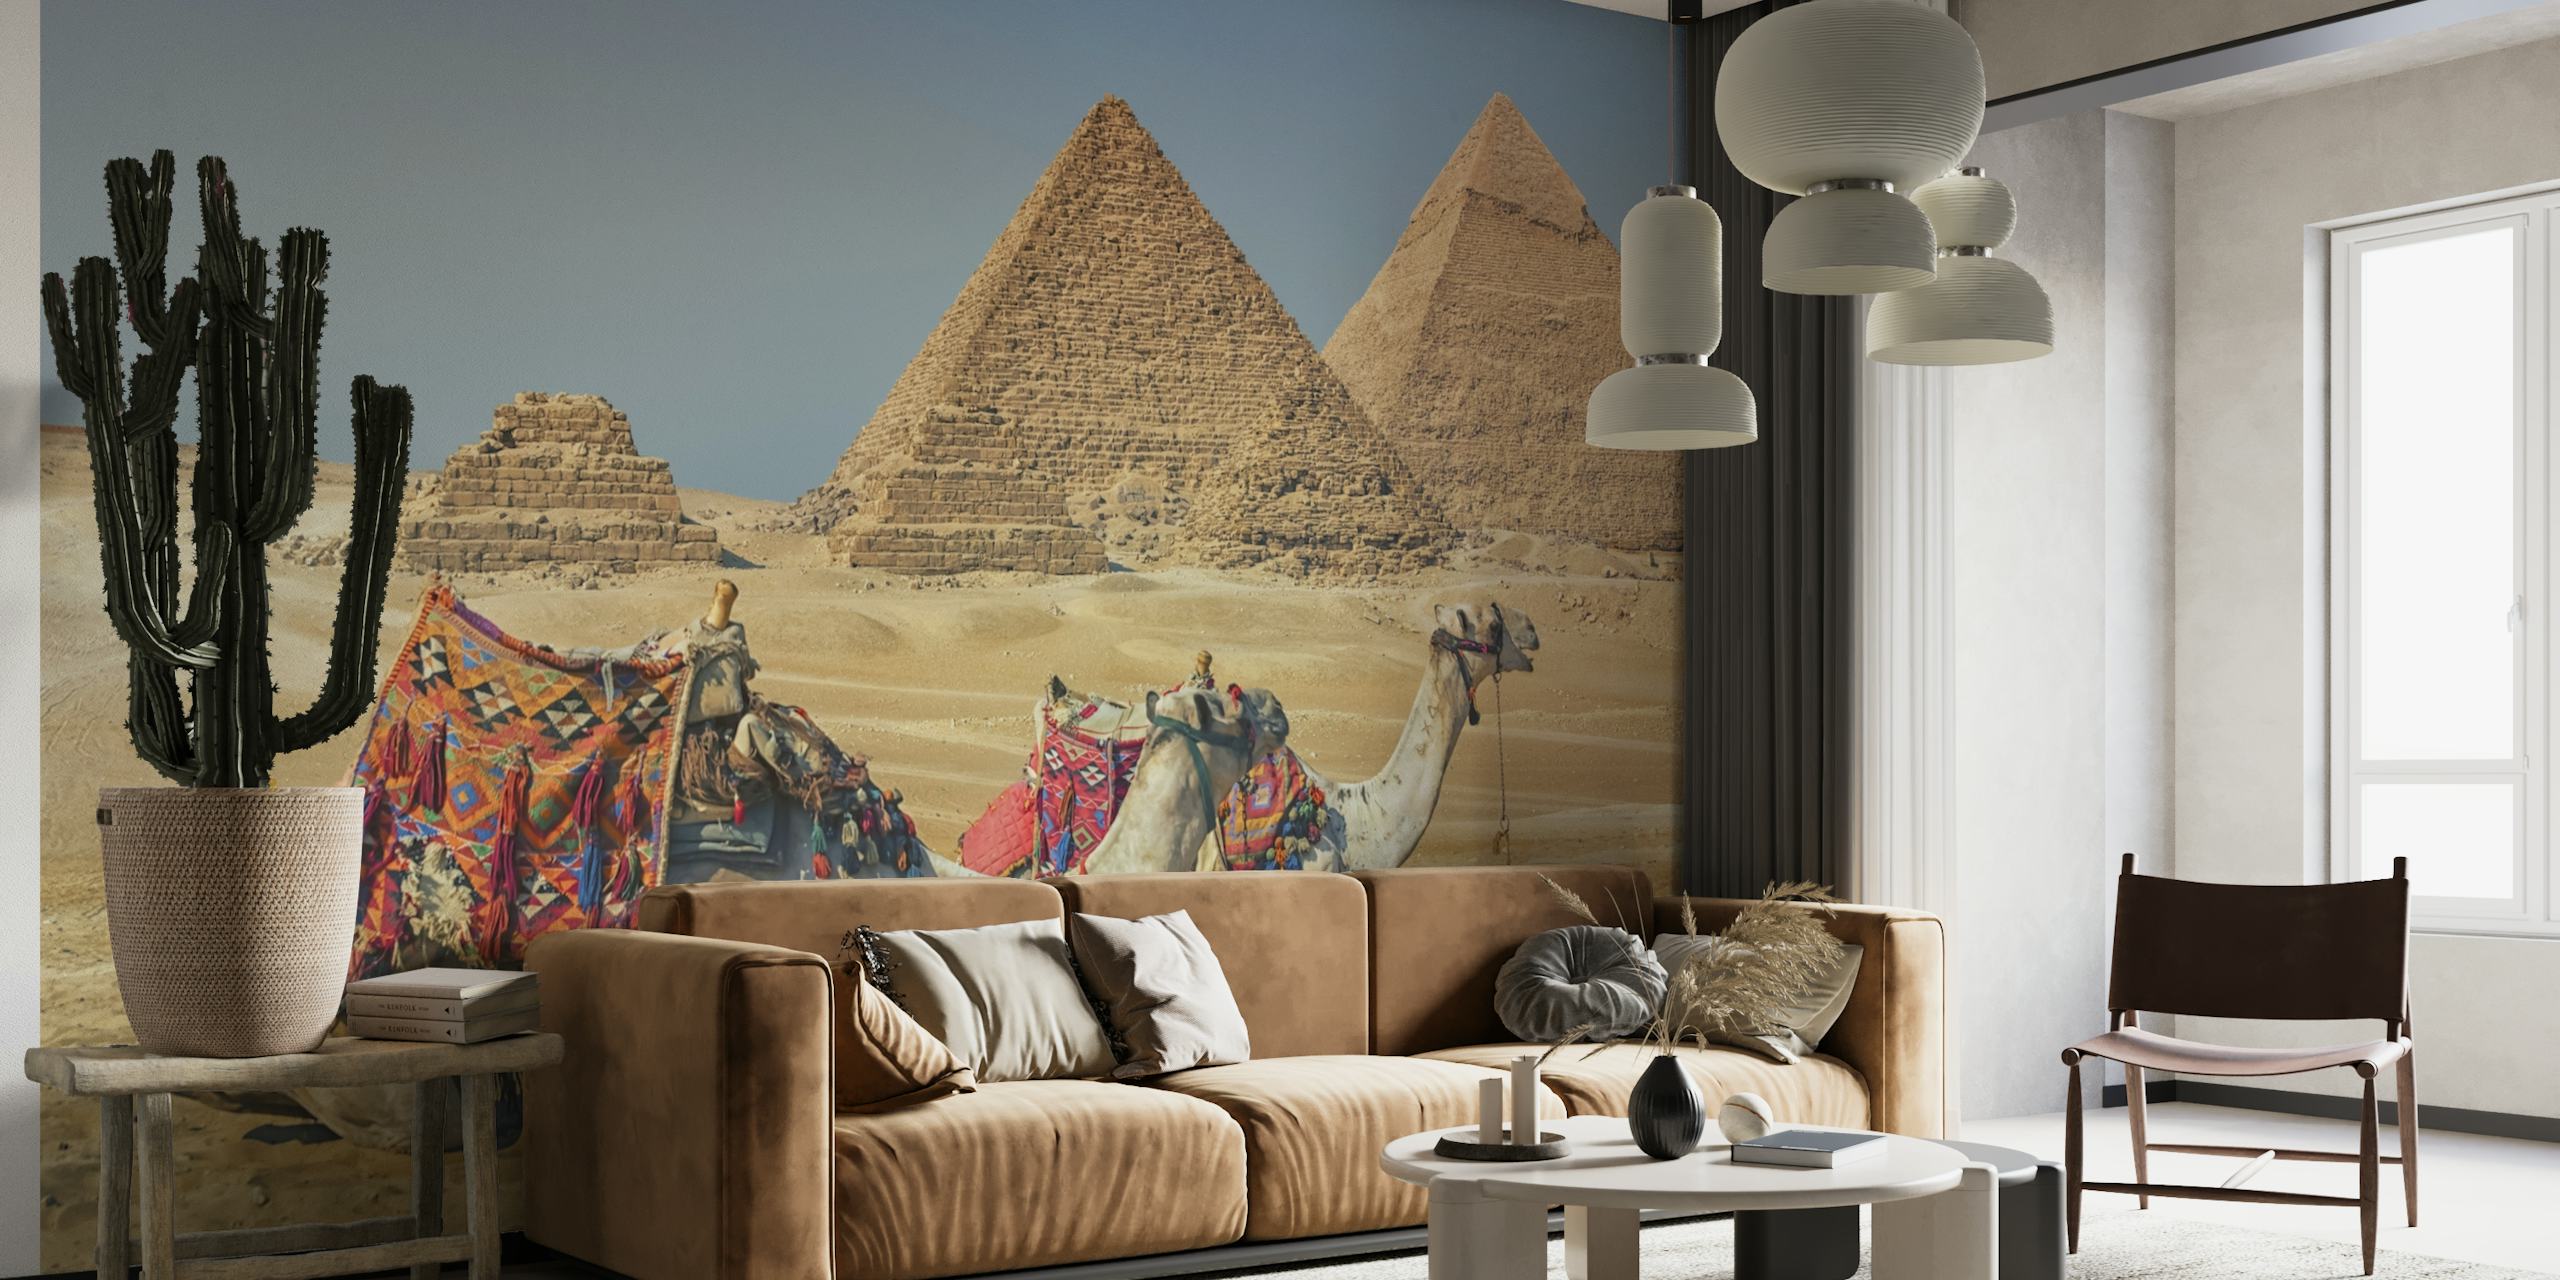 The Pyramids of Giza behang